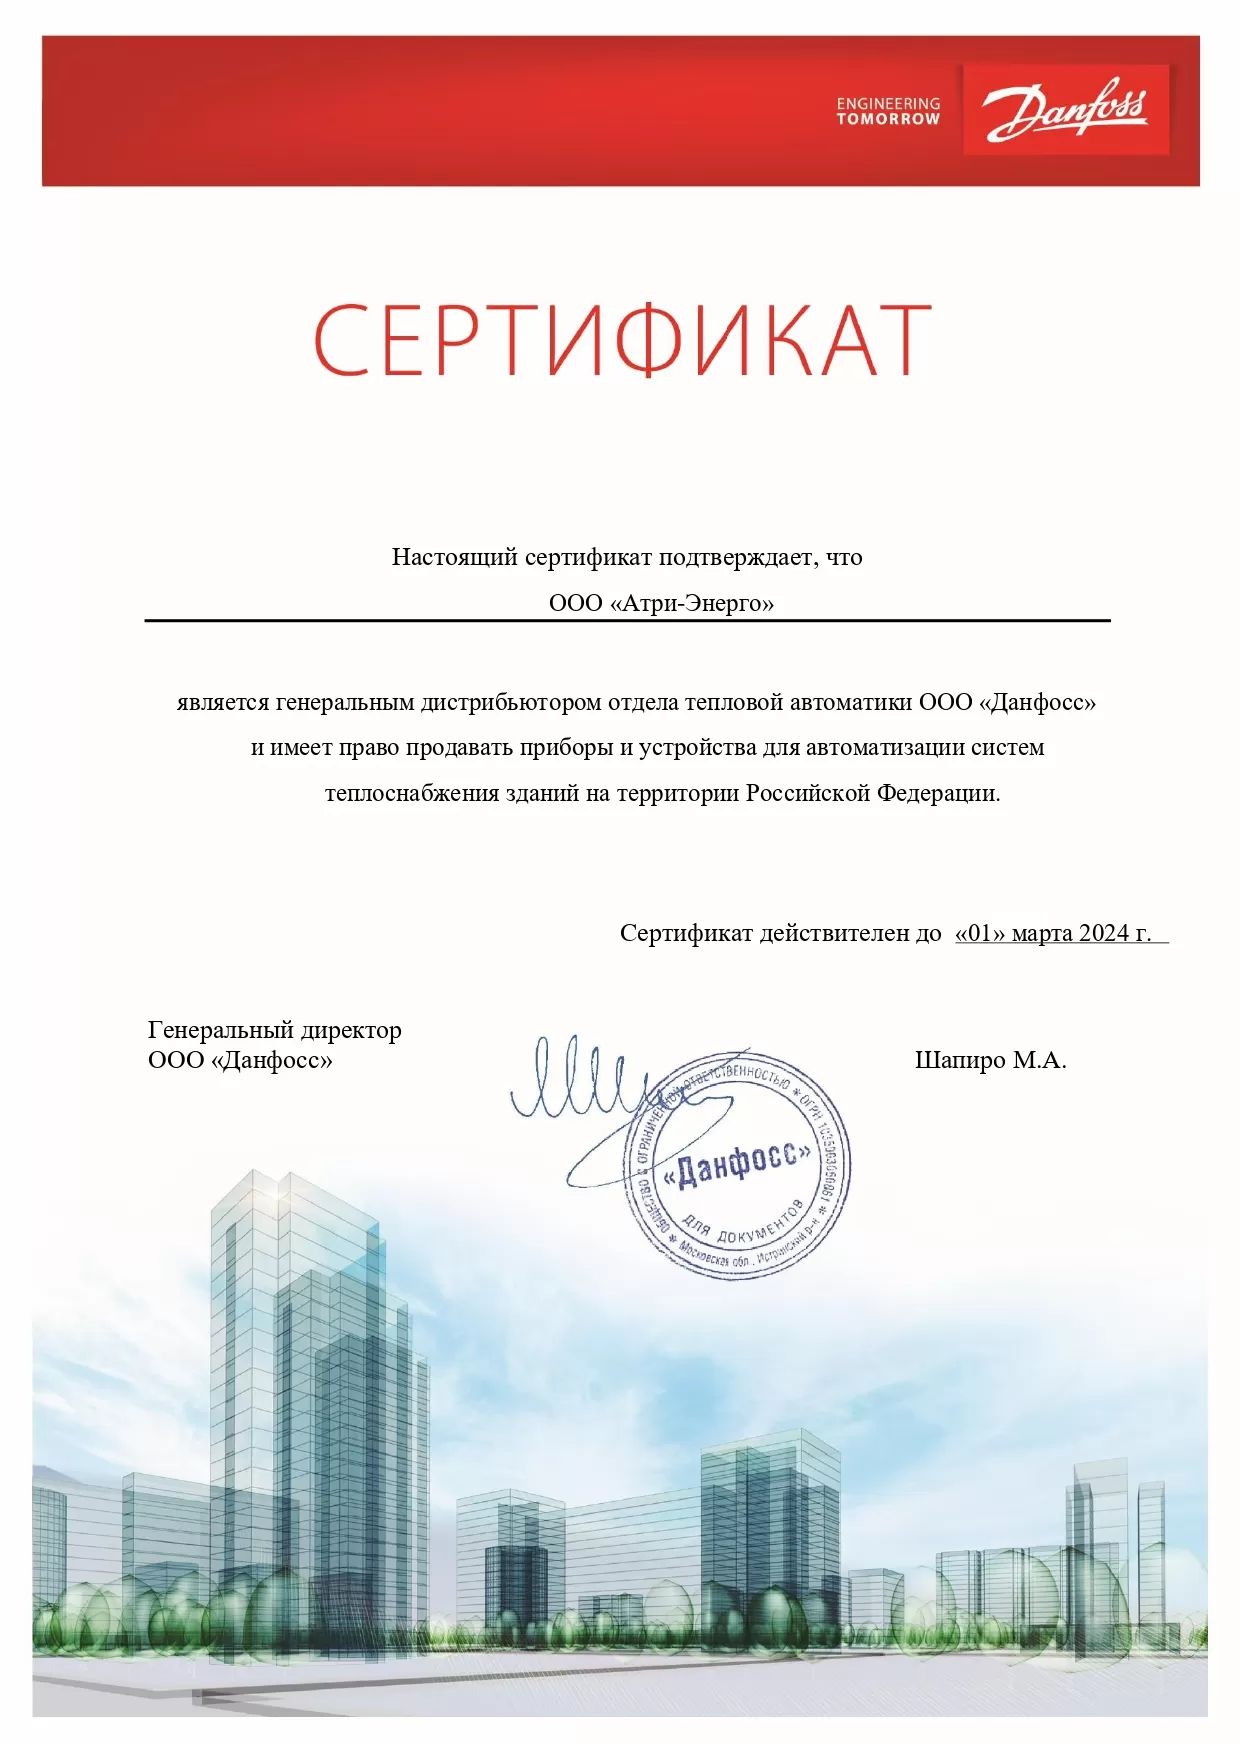 Сертификат генерального дистрибьютера отдела тепловой автоматики Данфосс